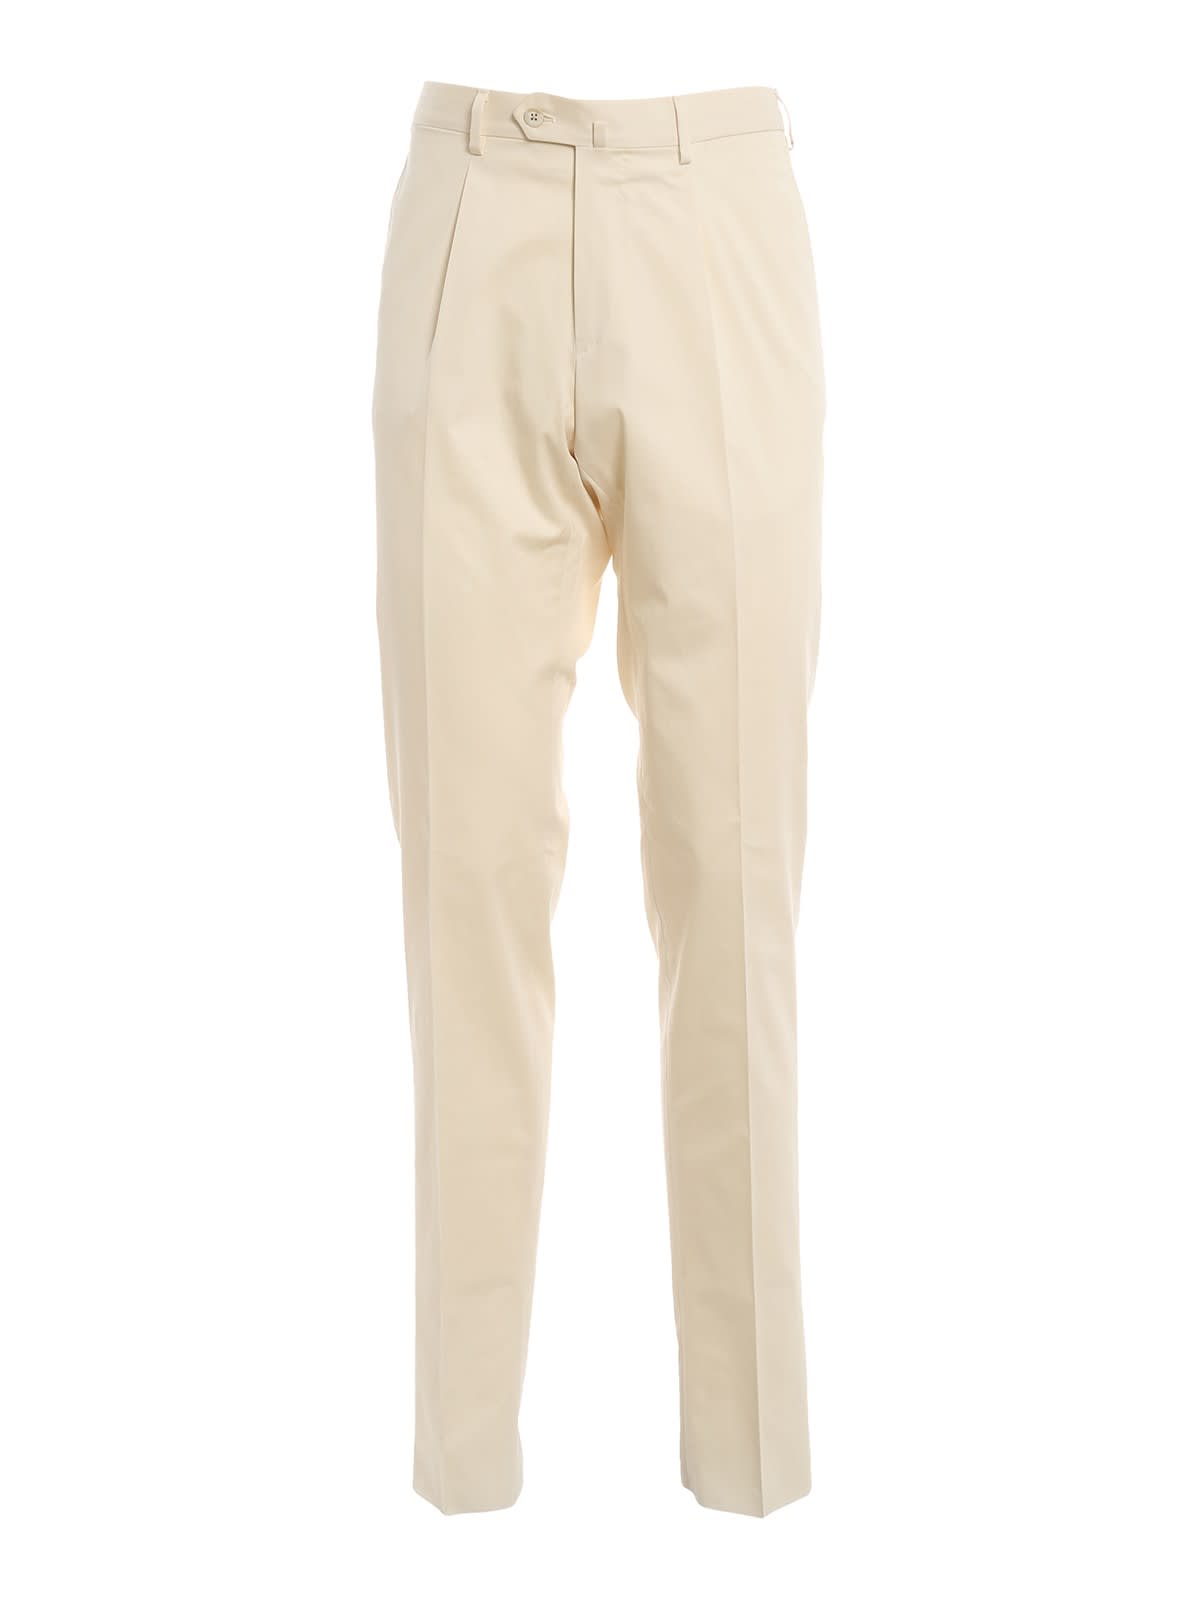 Caruso Pantalone In Cotone Stretch Crema S918azt501610590